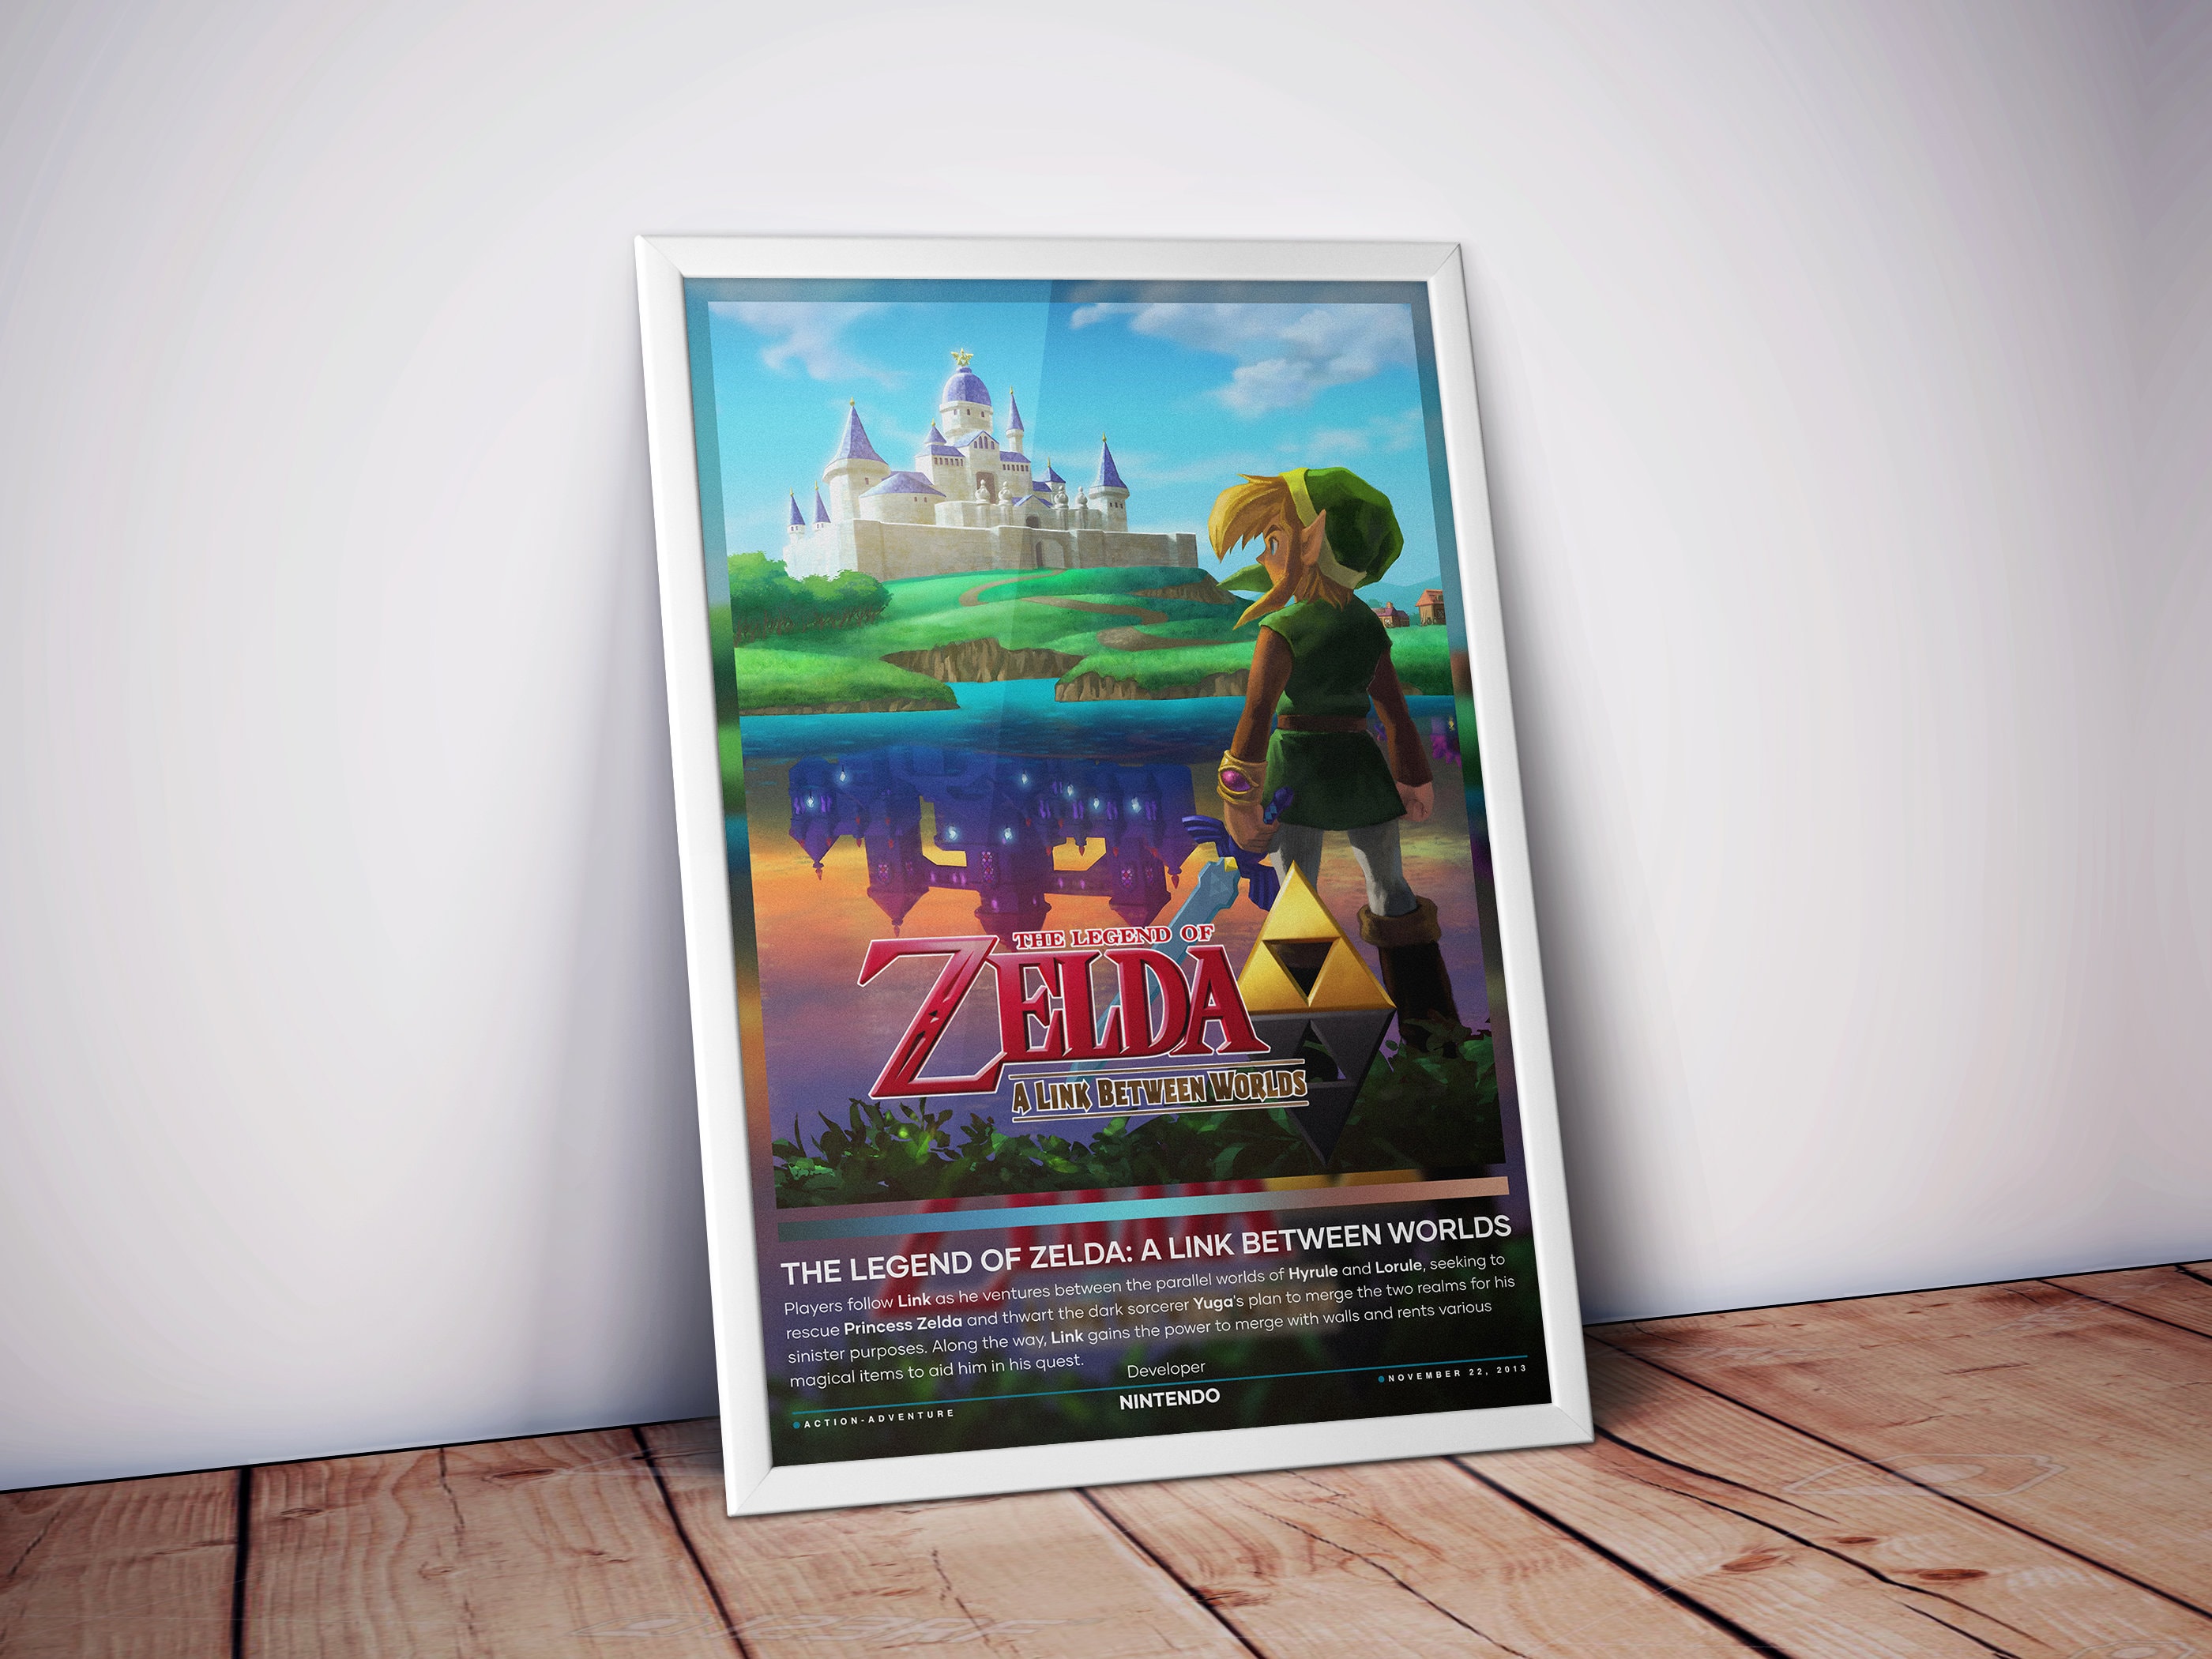 Pre-order Zelda: A Link Between Worlds, get a musical chest